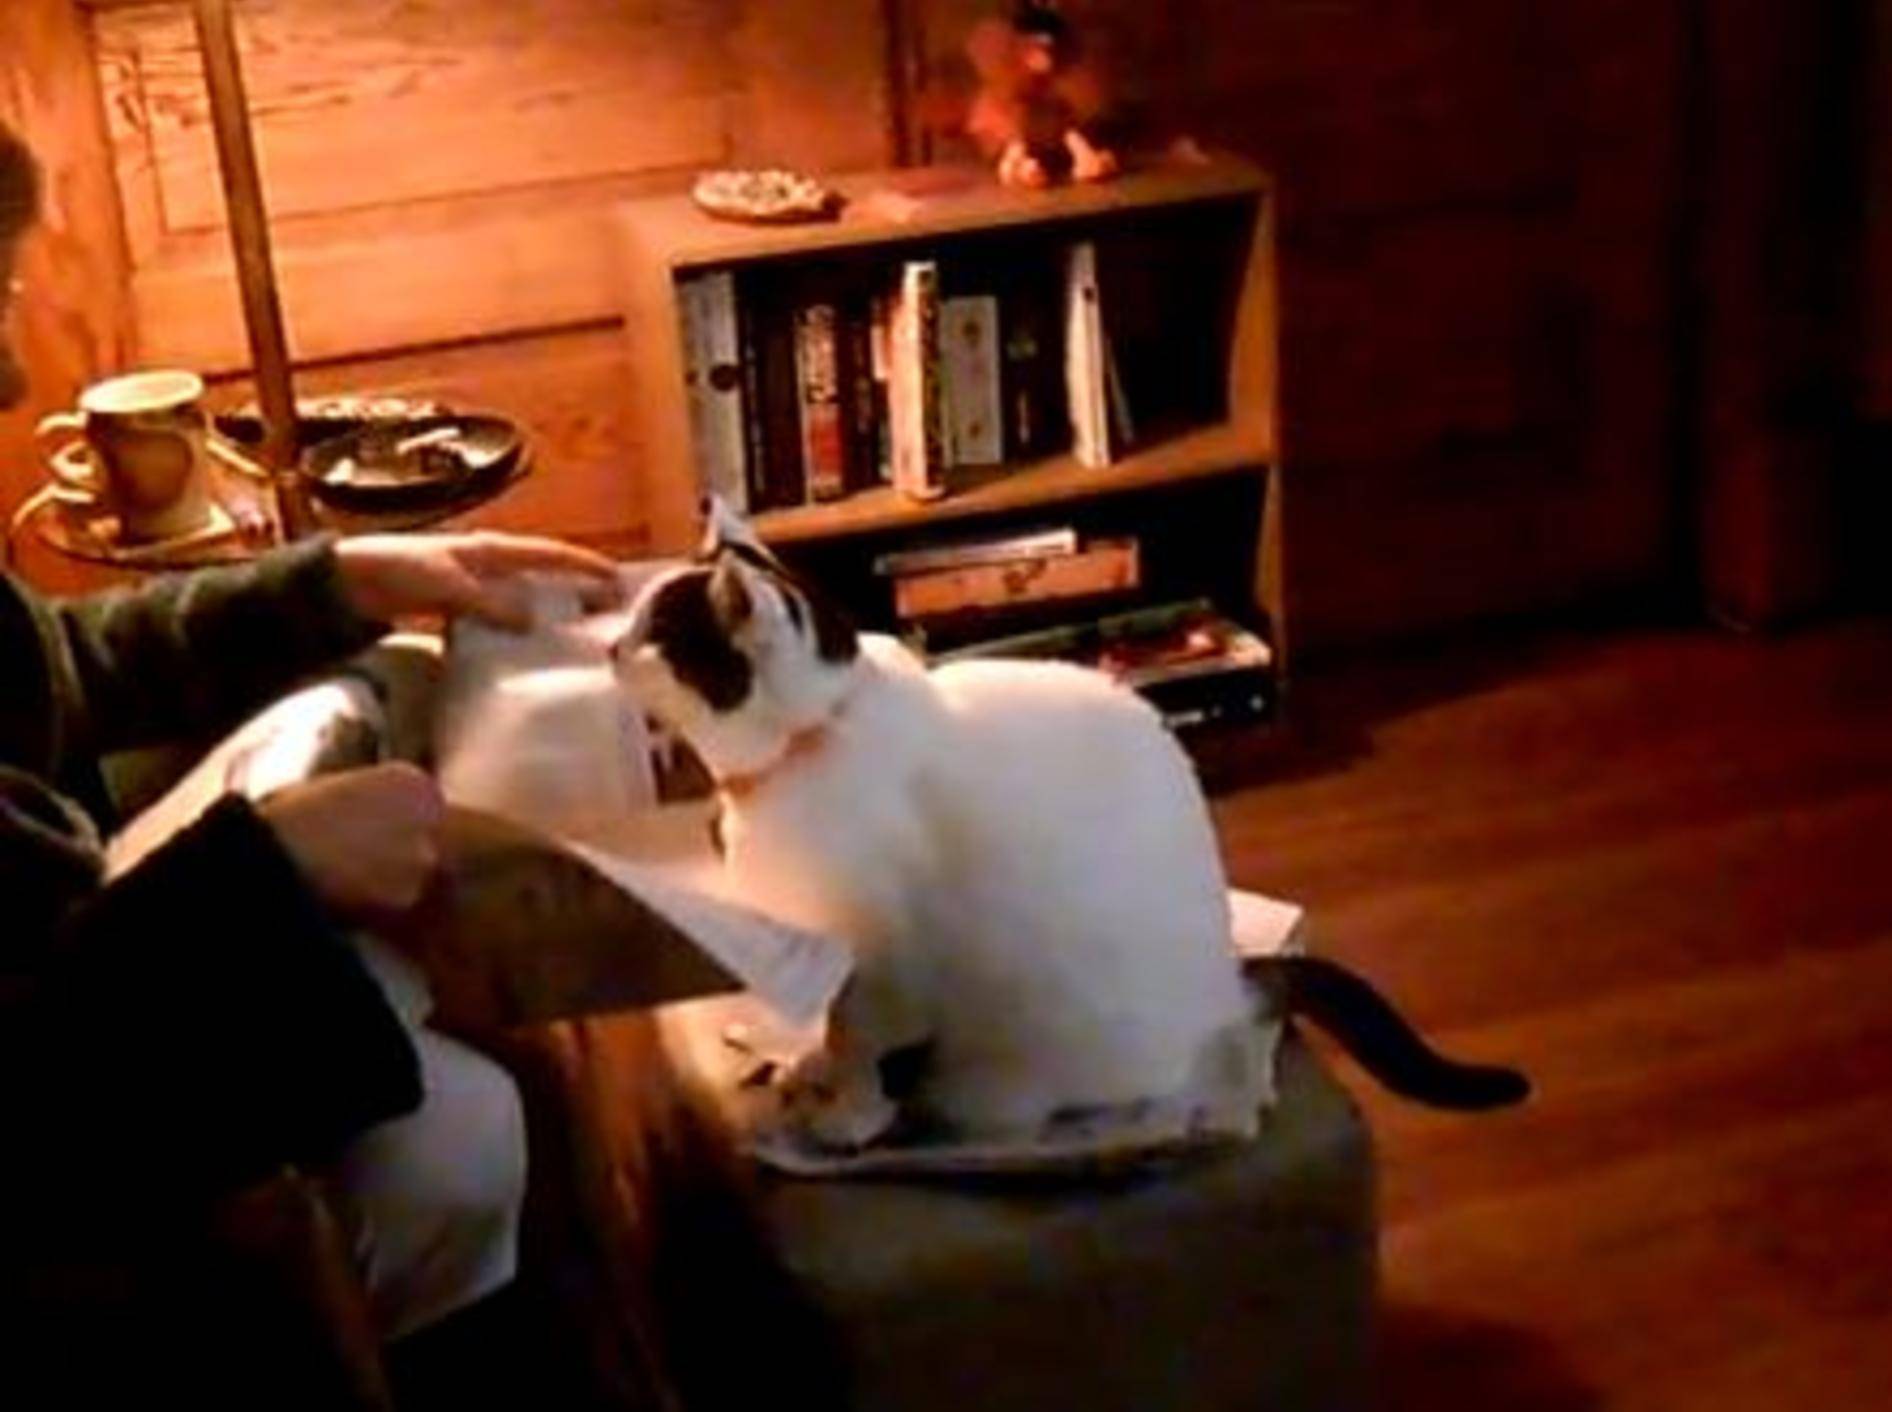 Katze Princess wünscht sich etwas mehr Aufmerksamkeit — Bild: Youtube / orangpend8